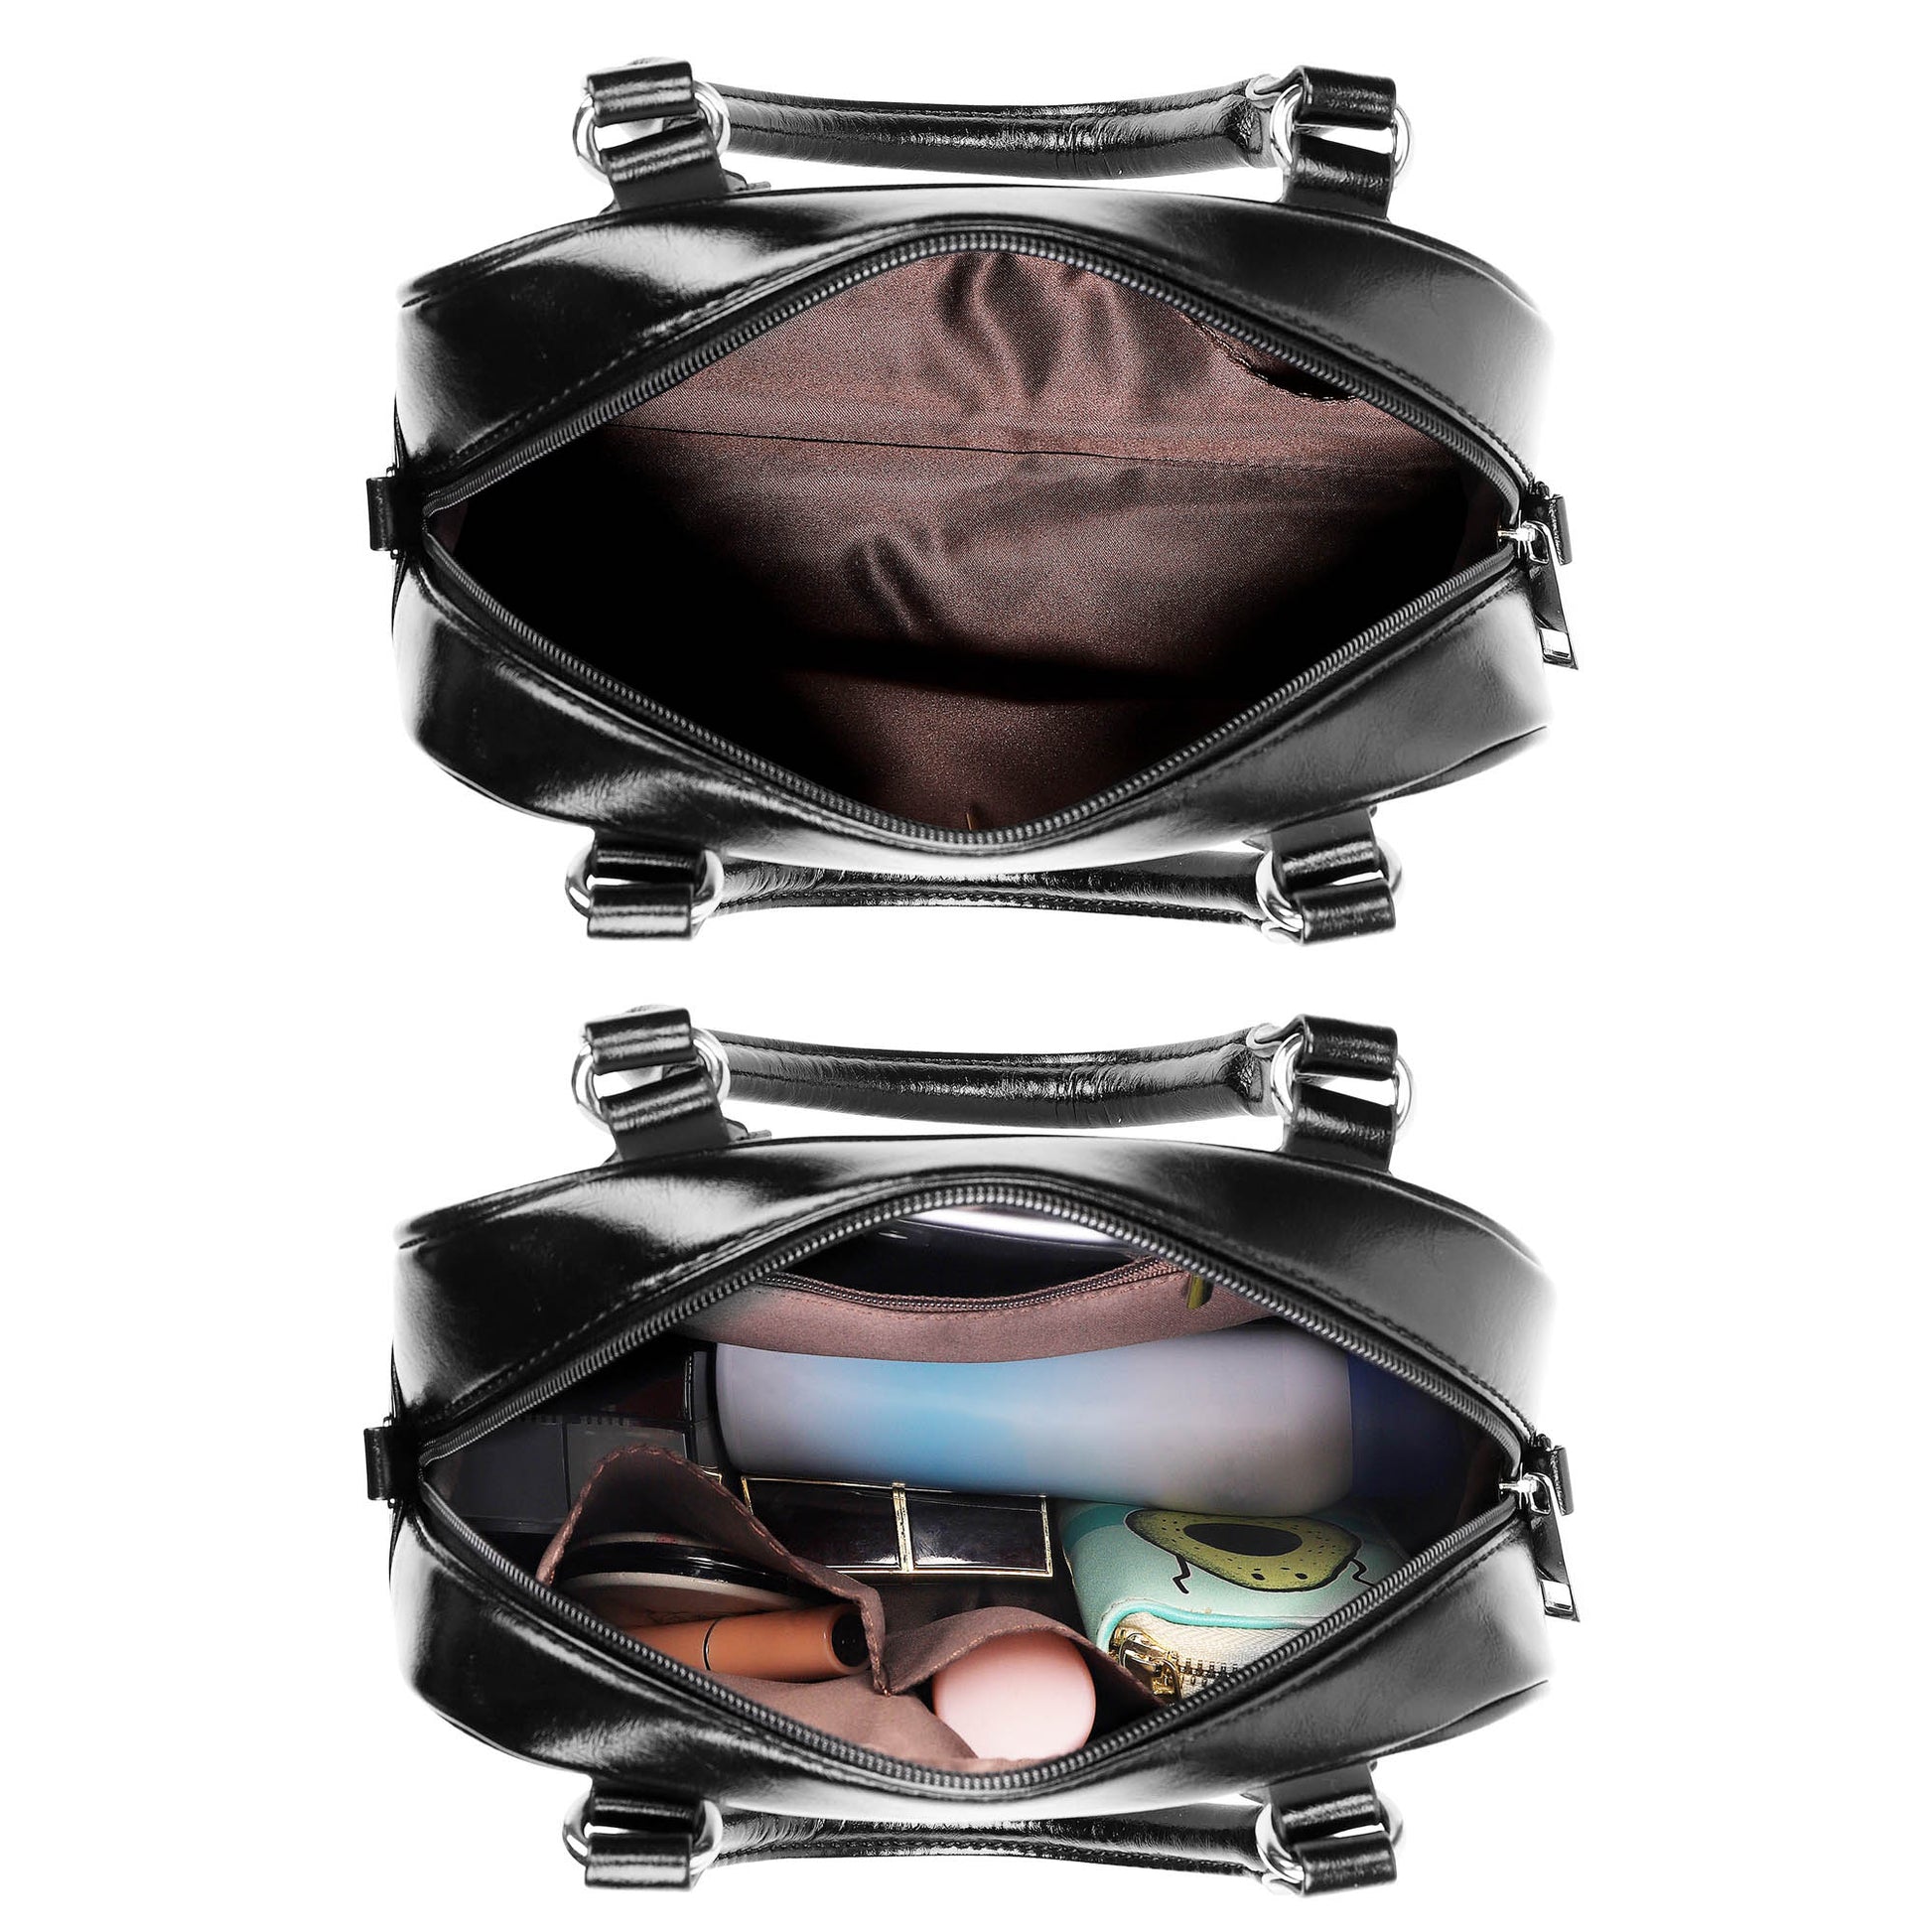 Stirling Tartan Shoulder Handbags - Tartanvibesclothing